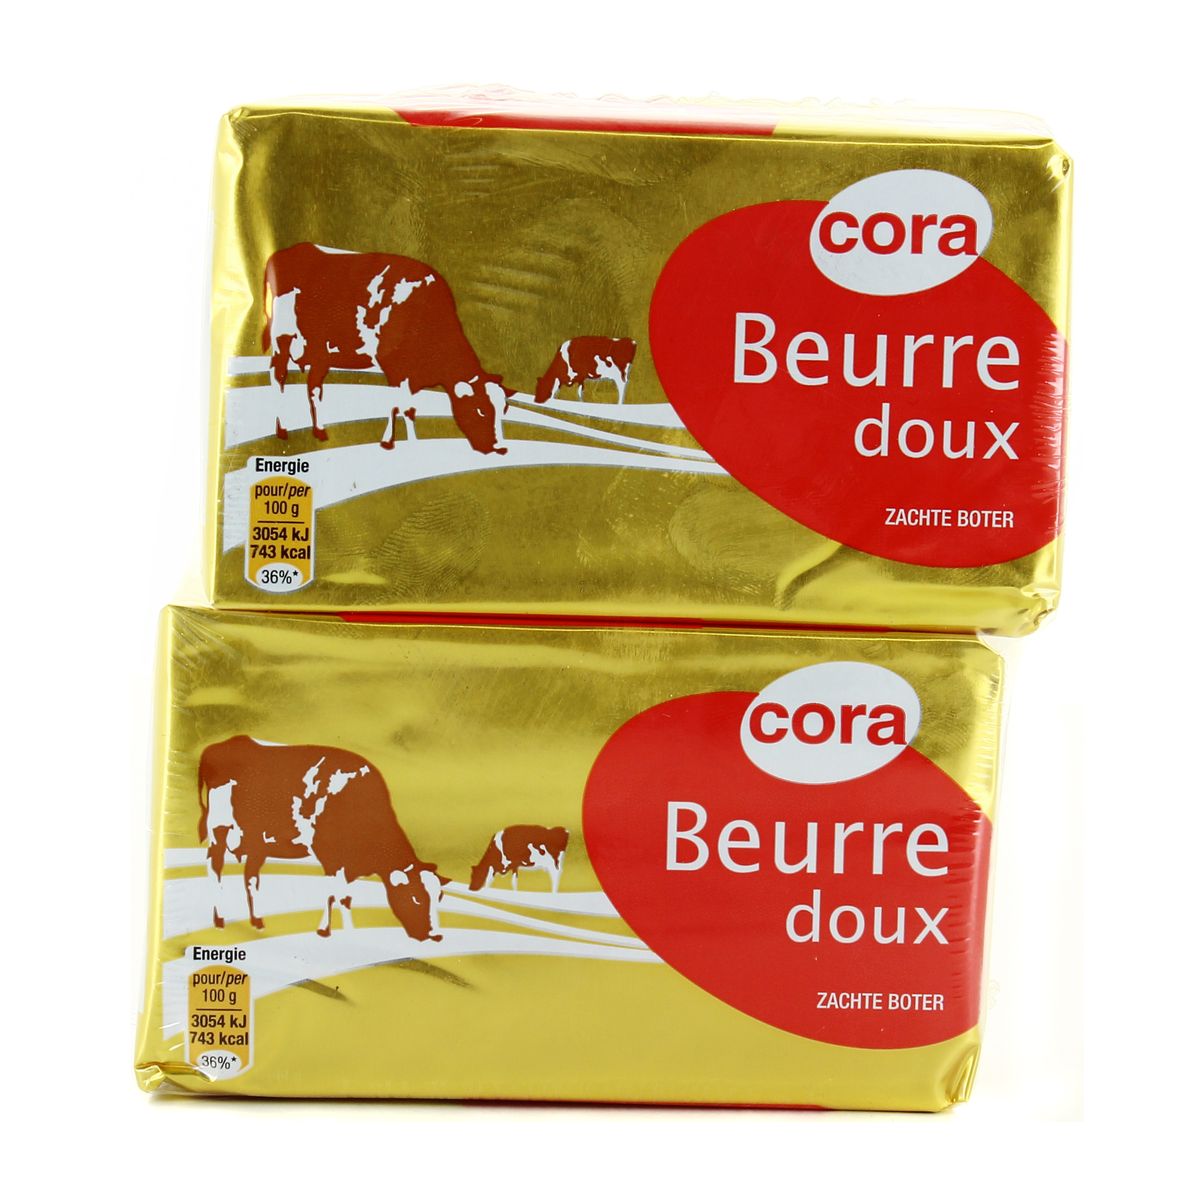 Cora beurre doux 250g